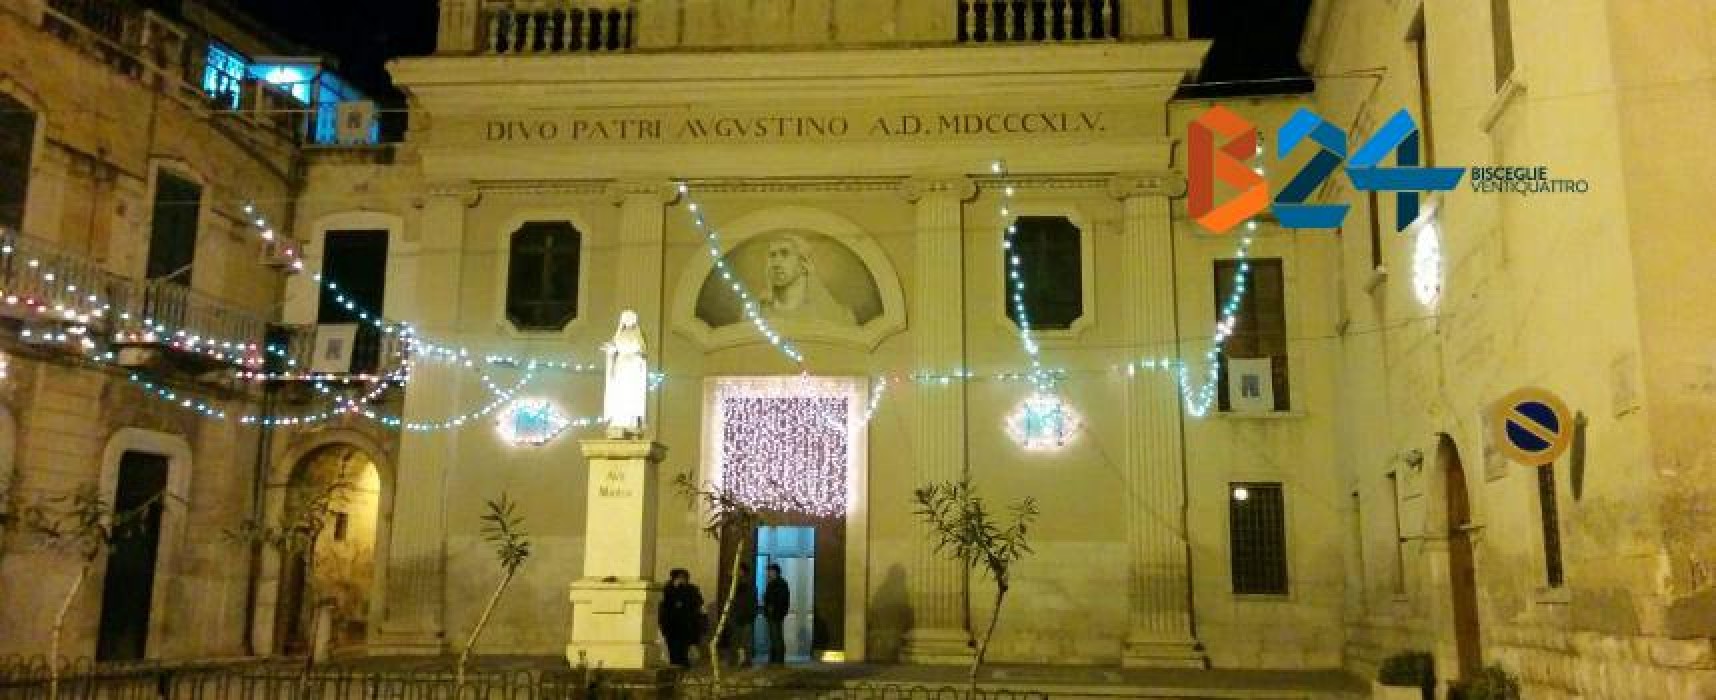 Solenni celebrazioni e festeggiamenti alla parrocchia di S. Agostino